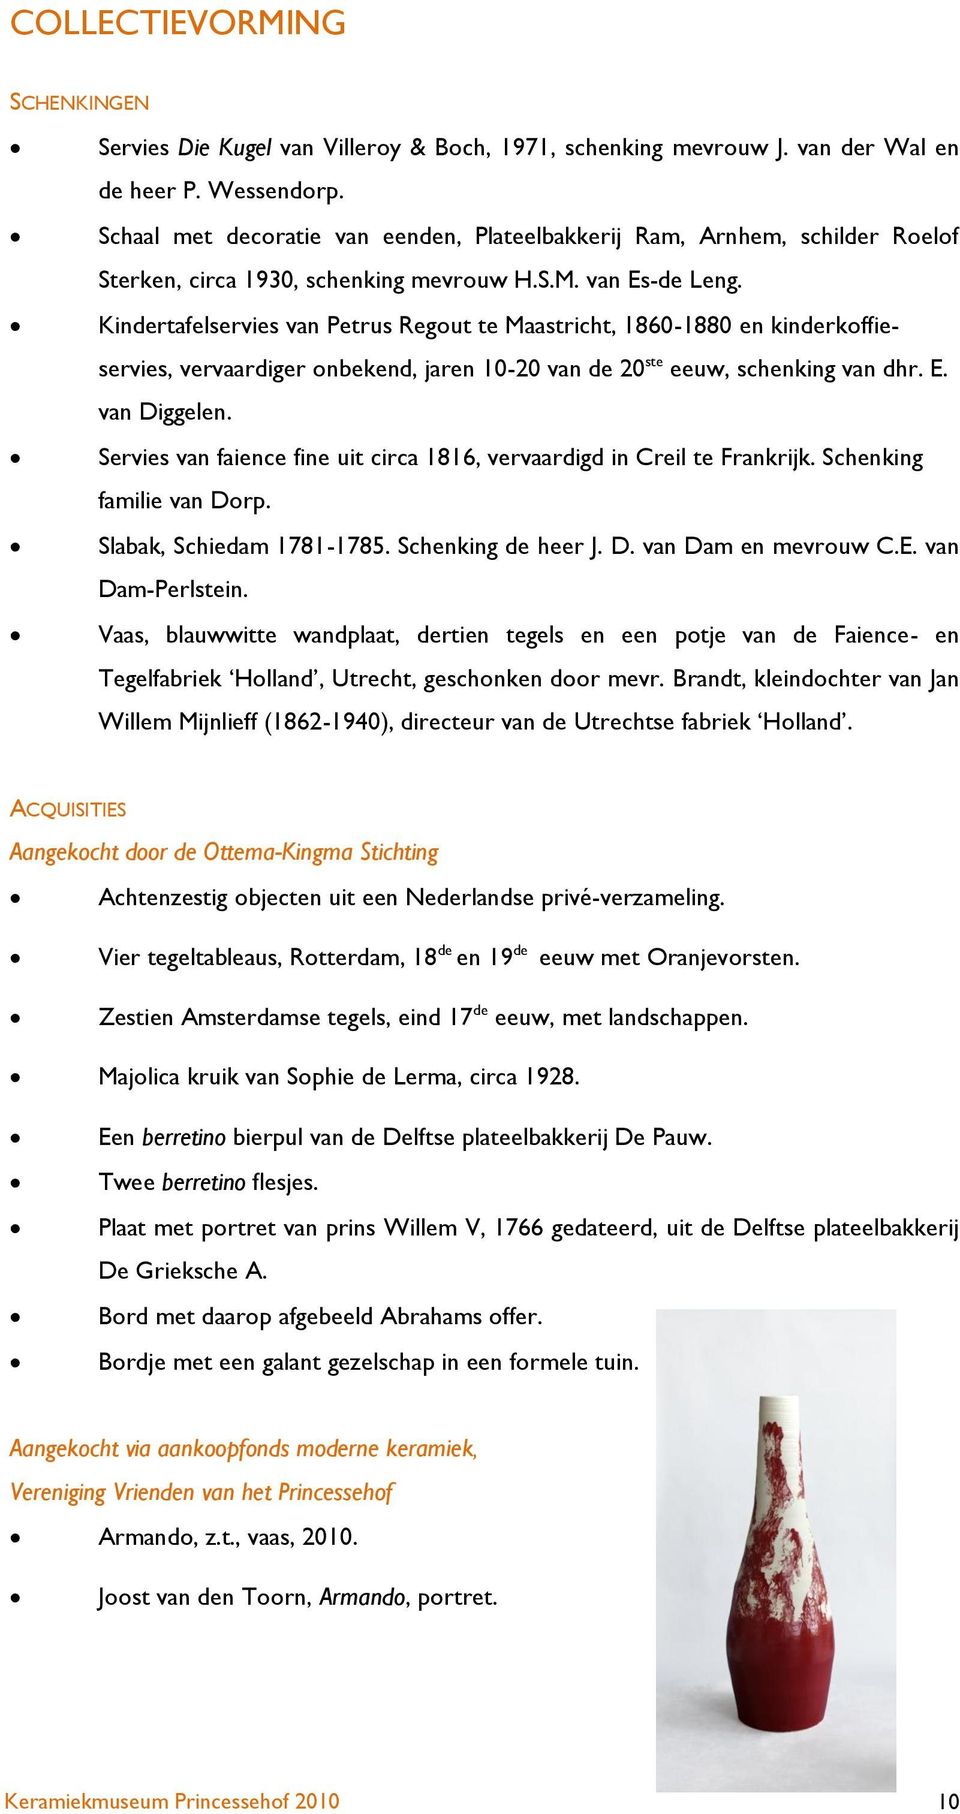 Kindertafelservies van Petrus Regout te Maastricht, 1860-1880 en kinderkoffieservies, vervaardiger onbekend, jaren 10-20 van de 20 ste eeuw, schenking van dhr. E. van Diggelen.